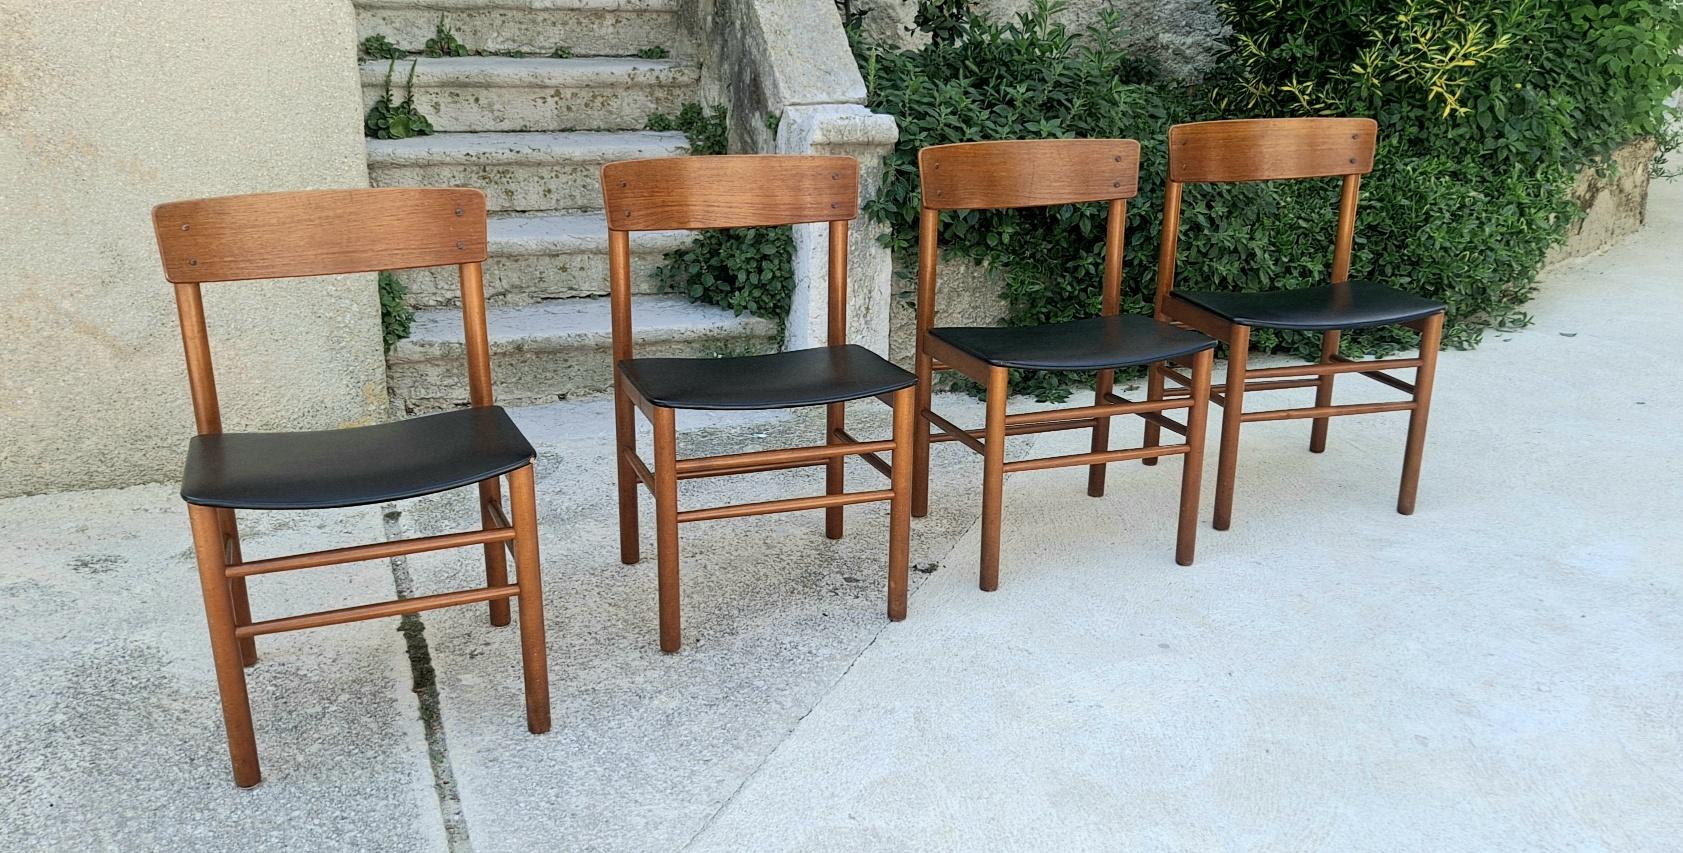 Ensemble danois de quatre chaises en chêne. Les chaises sont signées en bas.